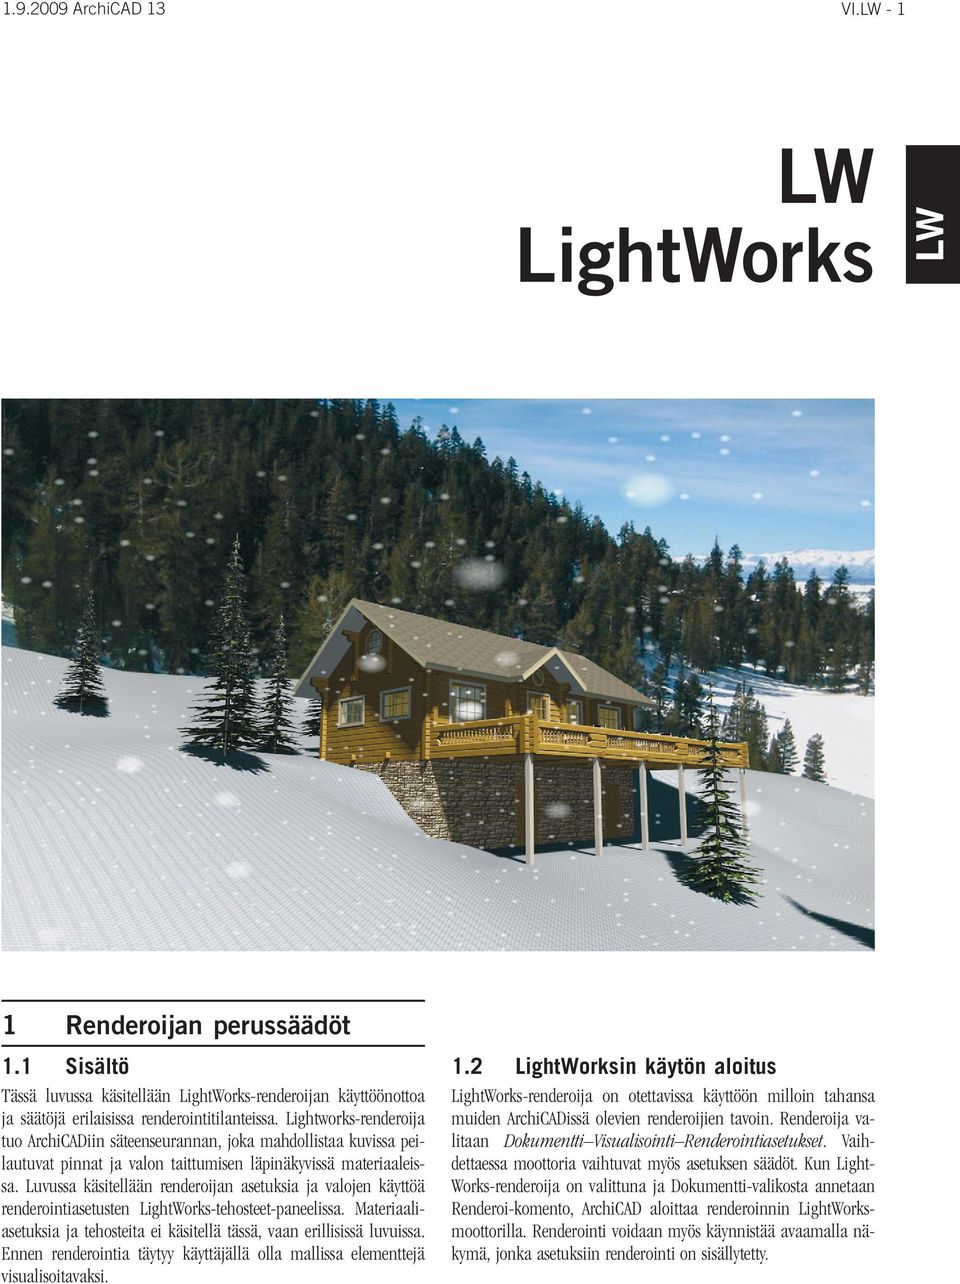 Luvussa käsitellään renderoijan asetuksia ja valojen käyttöä renderointiasetusten LightWorks-tehosteet-paneelissa. Materiaaliasetuksia ja tehosteita ei käsitellä tässä, vaan erillisissä luvuissa.